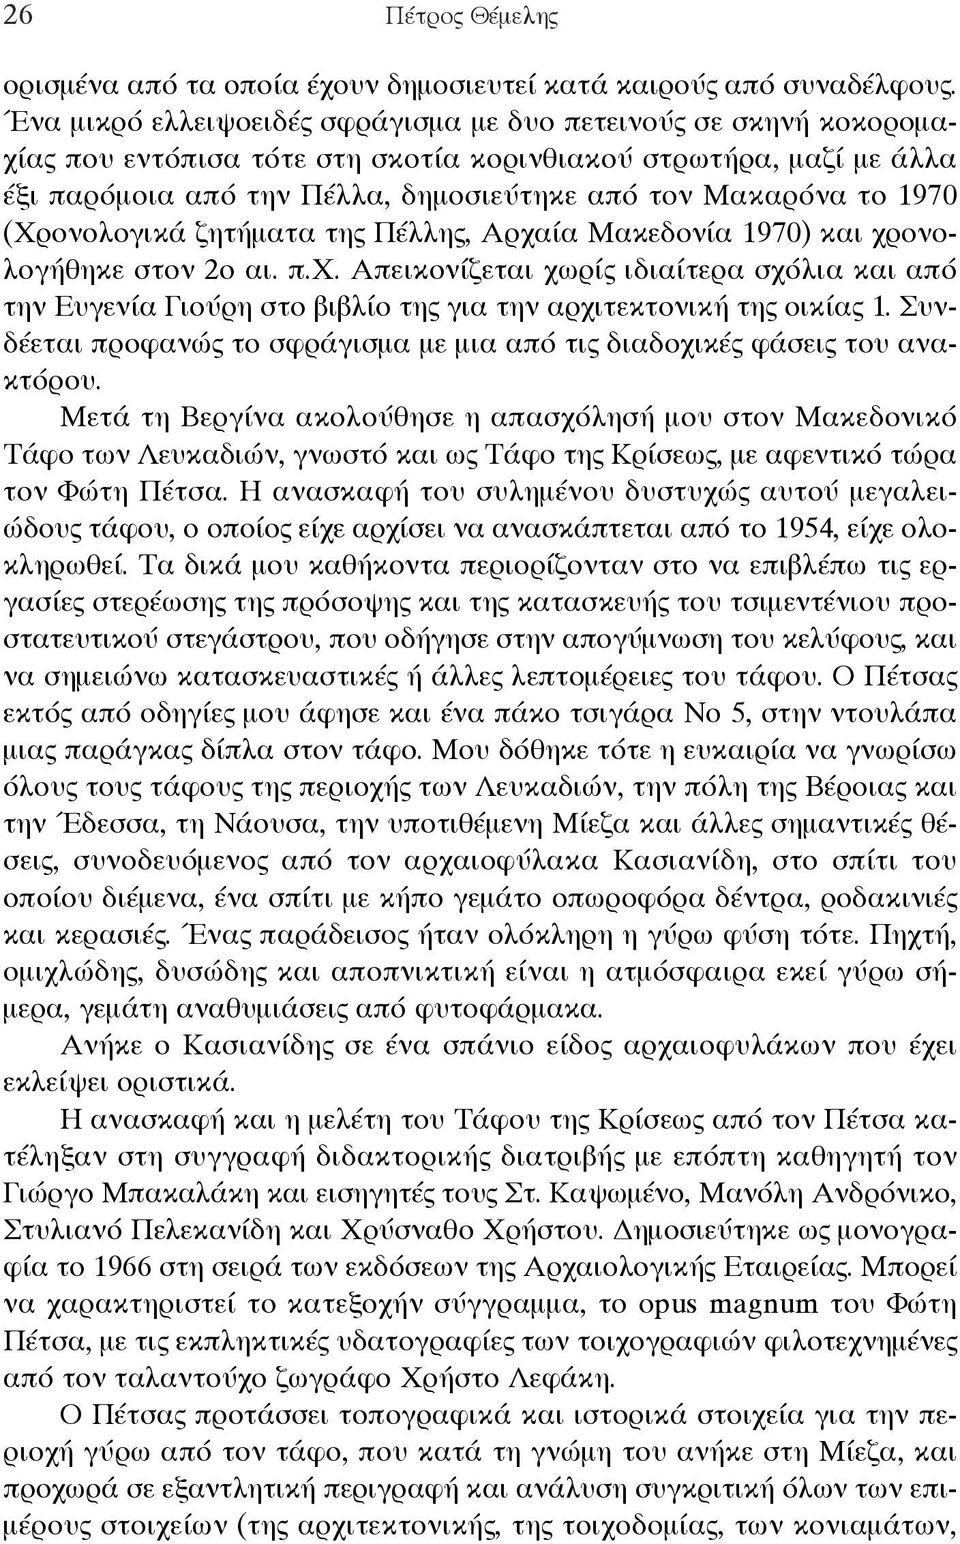 1970 (Χρονολογικά ζητήματα της Πέλλης, Αρχαία Μακεδονία 1970) και χρονολογήθηκε στον 2ο αι. π.χ. Απεικονίζεται χωρίς ιδιαίτερα σχόλια και από την Ευγενία Γιούρη στο βιβλίο της για την αρχιτεκτονική της οικίας 1.